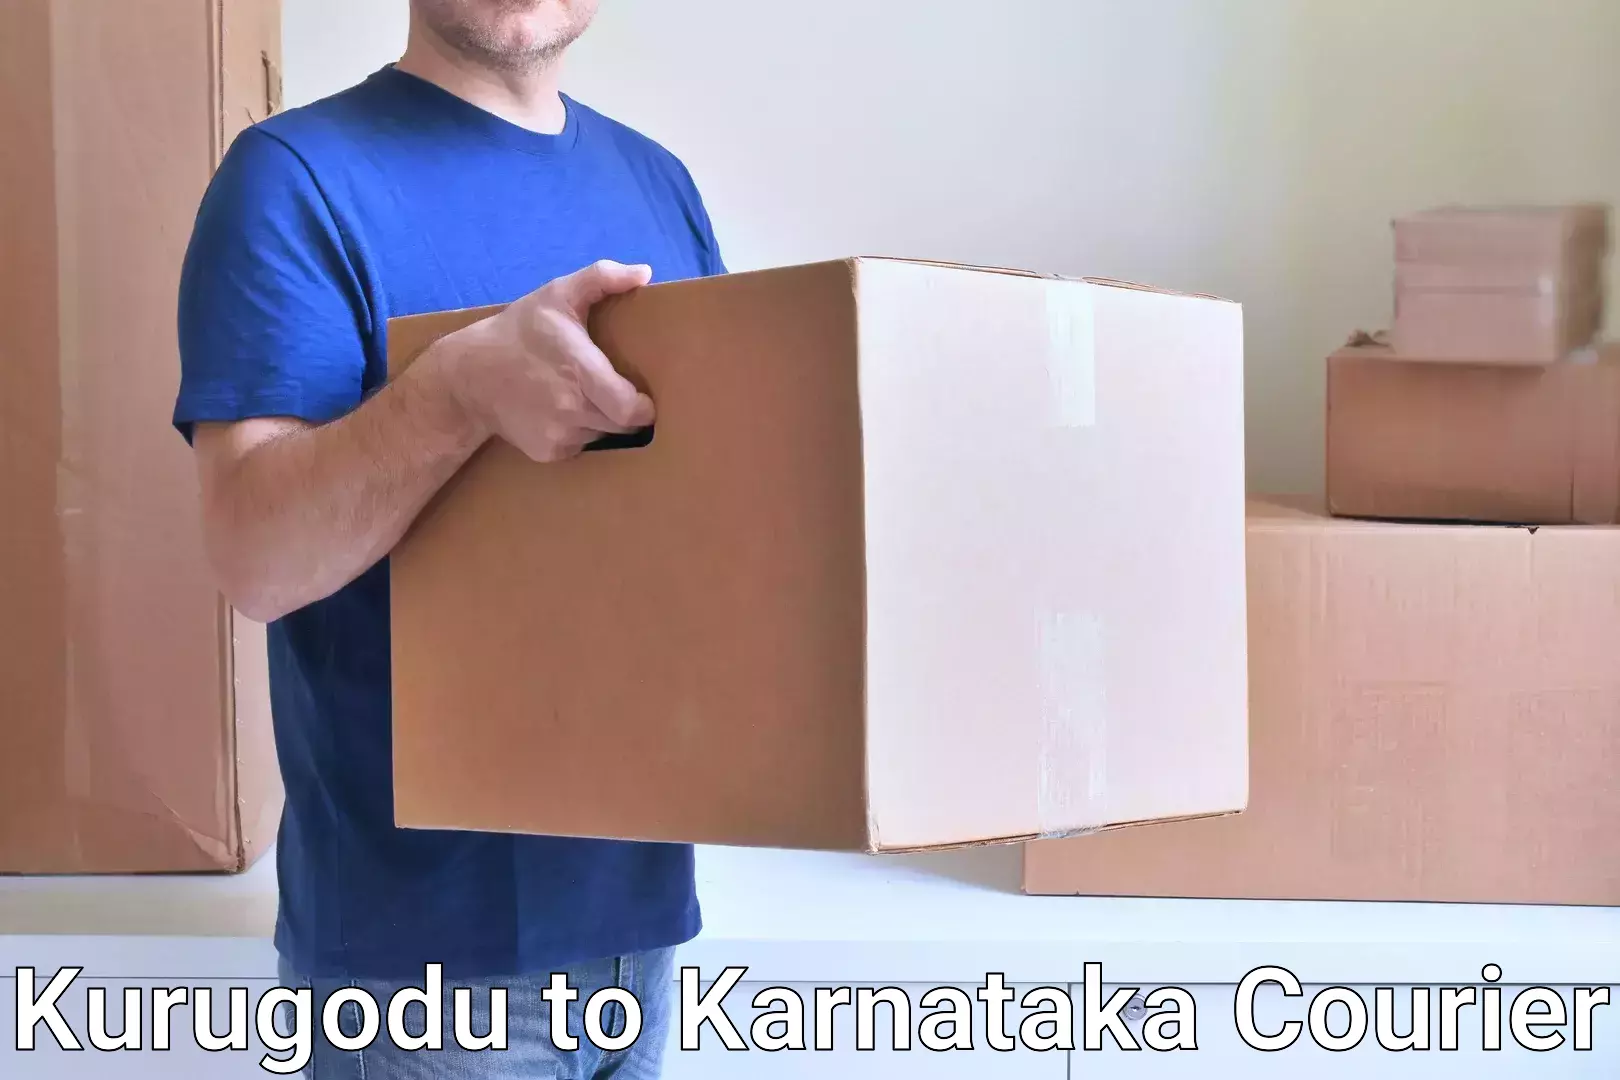 24-hour delivery options Kurugodu to Chikkanayakanahalli